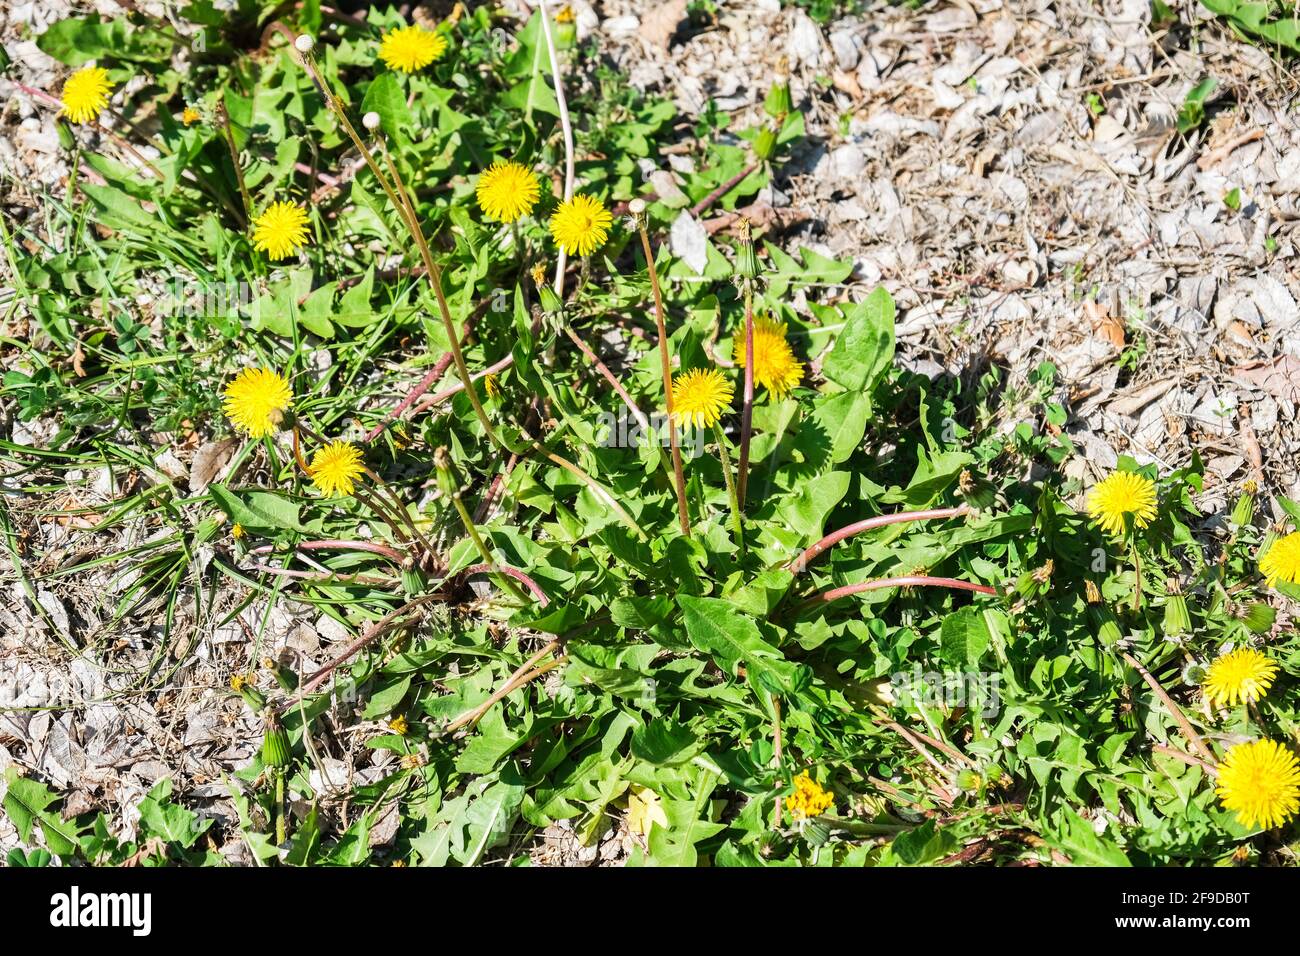 Diandelioni comuni, T. officinal Dandelions comuni, T. officinale, in fase di fioritura durante la primavera. Tutte le parti della pianta sono commestibili. Kansas, Stati Uniti Foto Stock